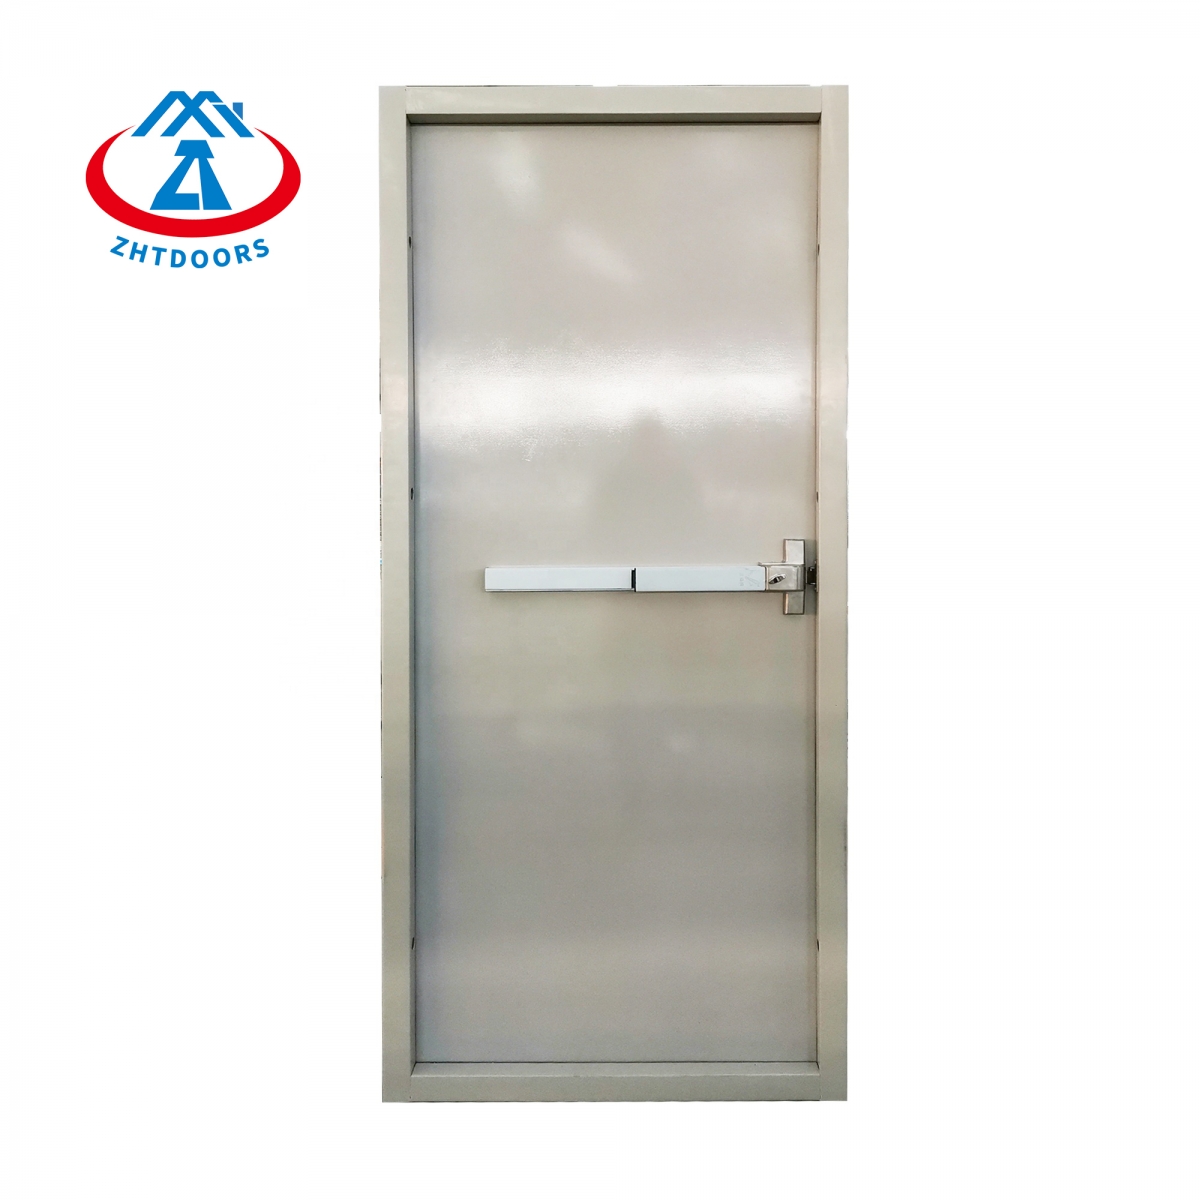 Security Metal Fire Door-ZTFIRE Door- Fire Door,Fireproof Door,Fire rated Door,Fire Resistant Door,Steel Door,Metal Door,Exit Door